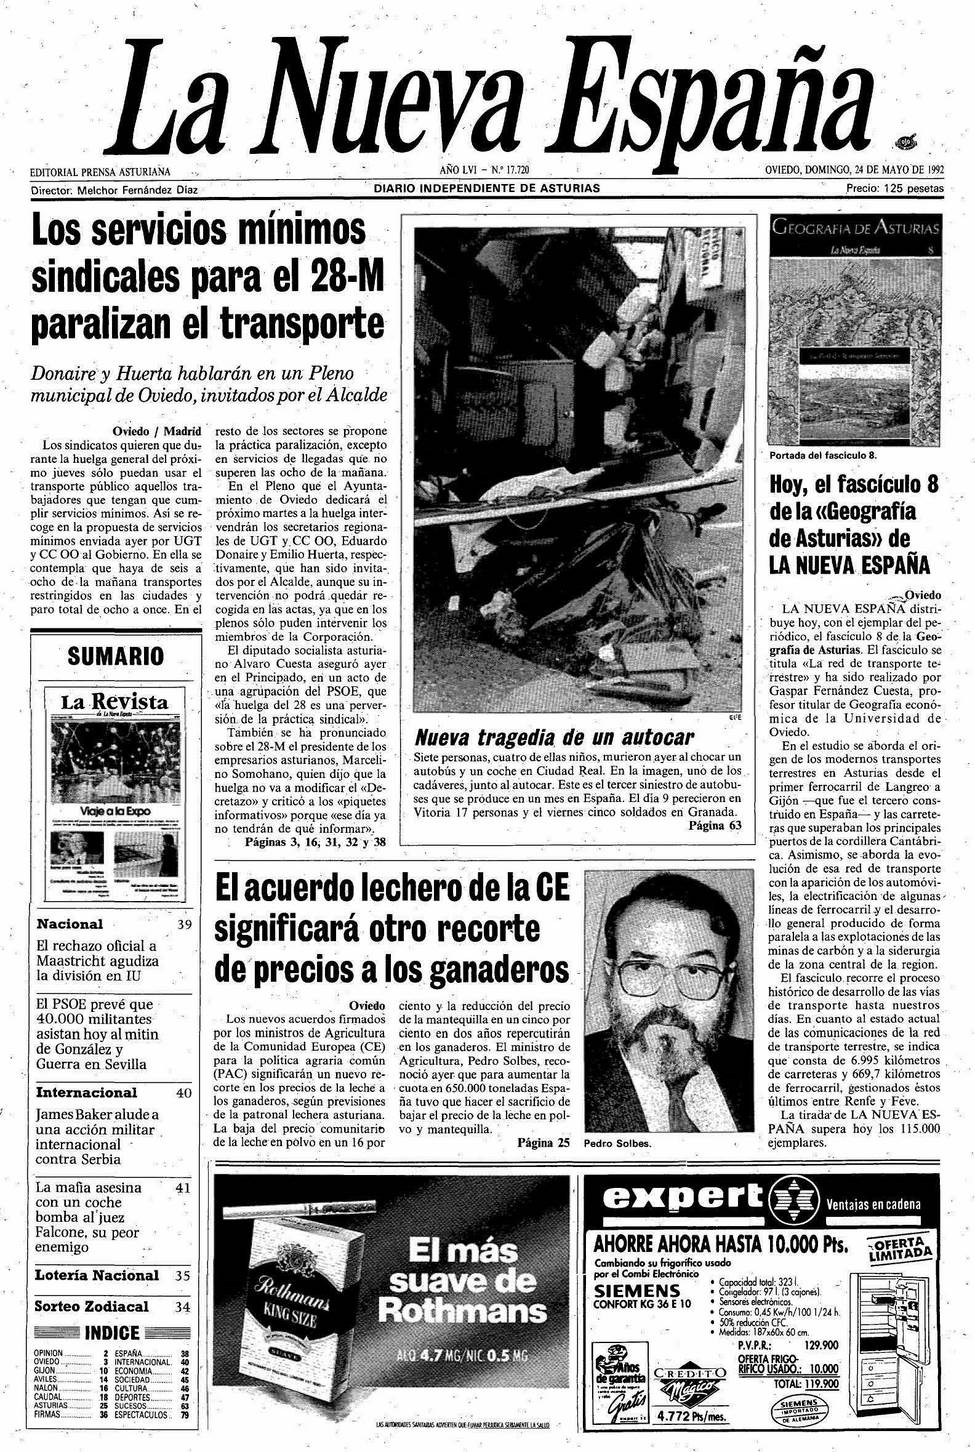 Portada del Domingo, 24 de Mayo de 1992